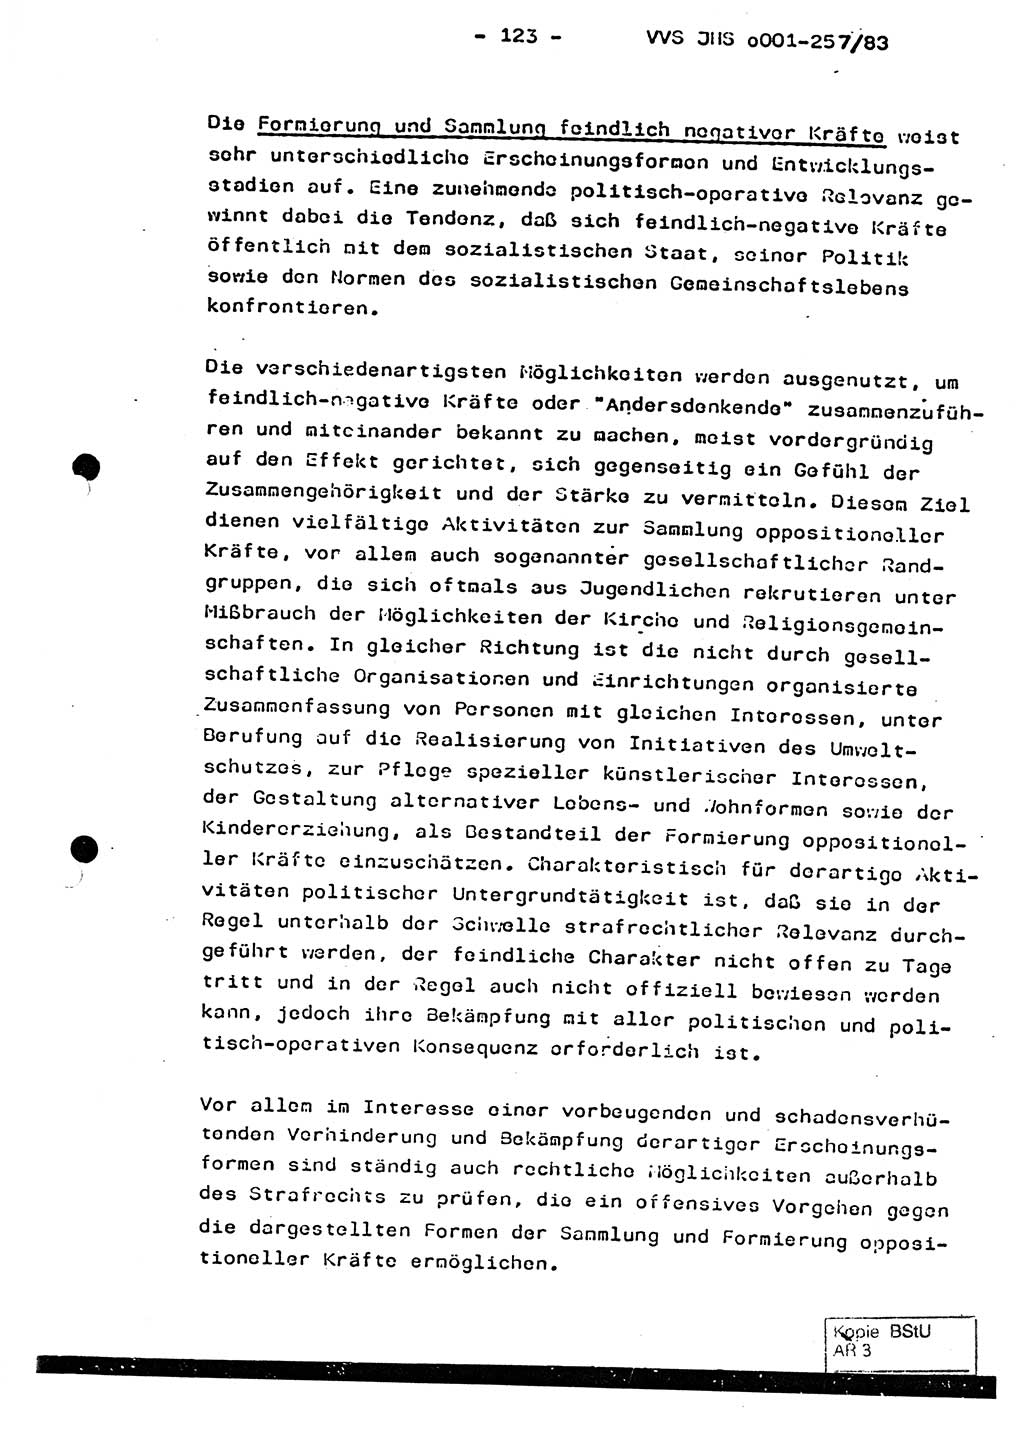 Dissertation, Oberst Helmut Lubas (BV Mdg.), Oberstleutnant Manfred Eschberger (HA IX), Oberleutnant Hans-Jürgen Ludwig (JHS), Ministerium für Staatssicherheit (MfS) [Deutsche Demokratische Republik (DDR)], Juristische Hochschule (JHS), Vertrauliche Verschlußsache (VVS) o001-257/83, Potsdam 1983, Seite 123 (Diss. MfS DDR JHS VVS o001-257/83 1983, S. 123)